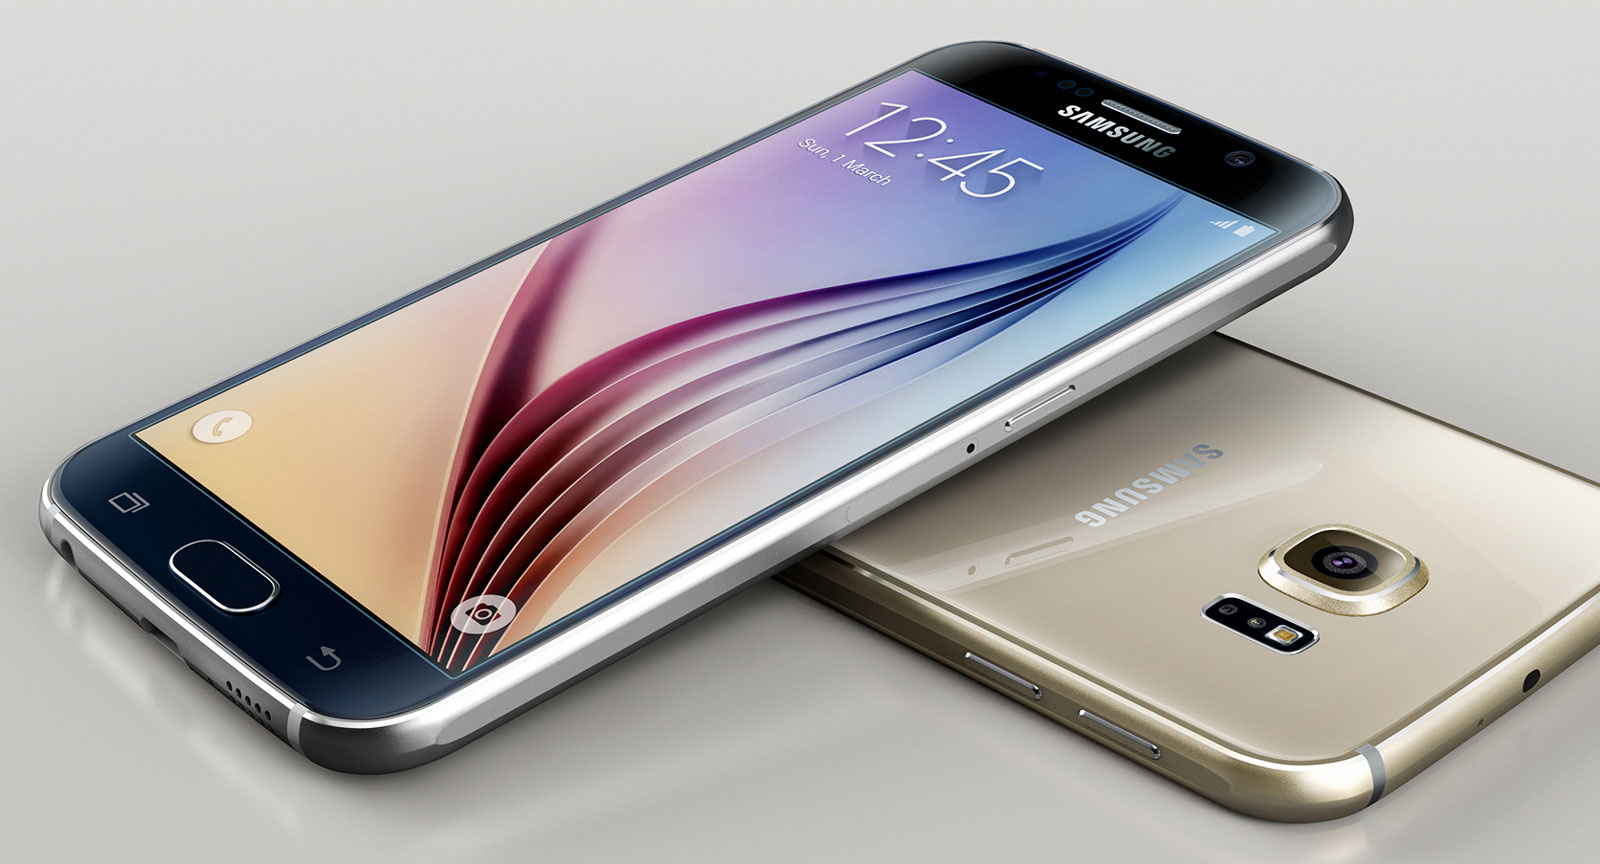 Le Galaxy S6 (ci-dessus) partage le même design que celui du Galaxy S6 Edge (en entête de l'article).